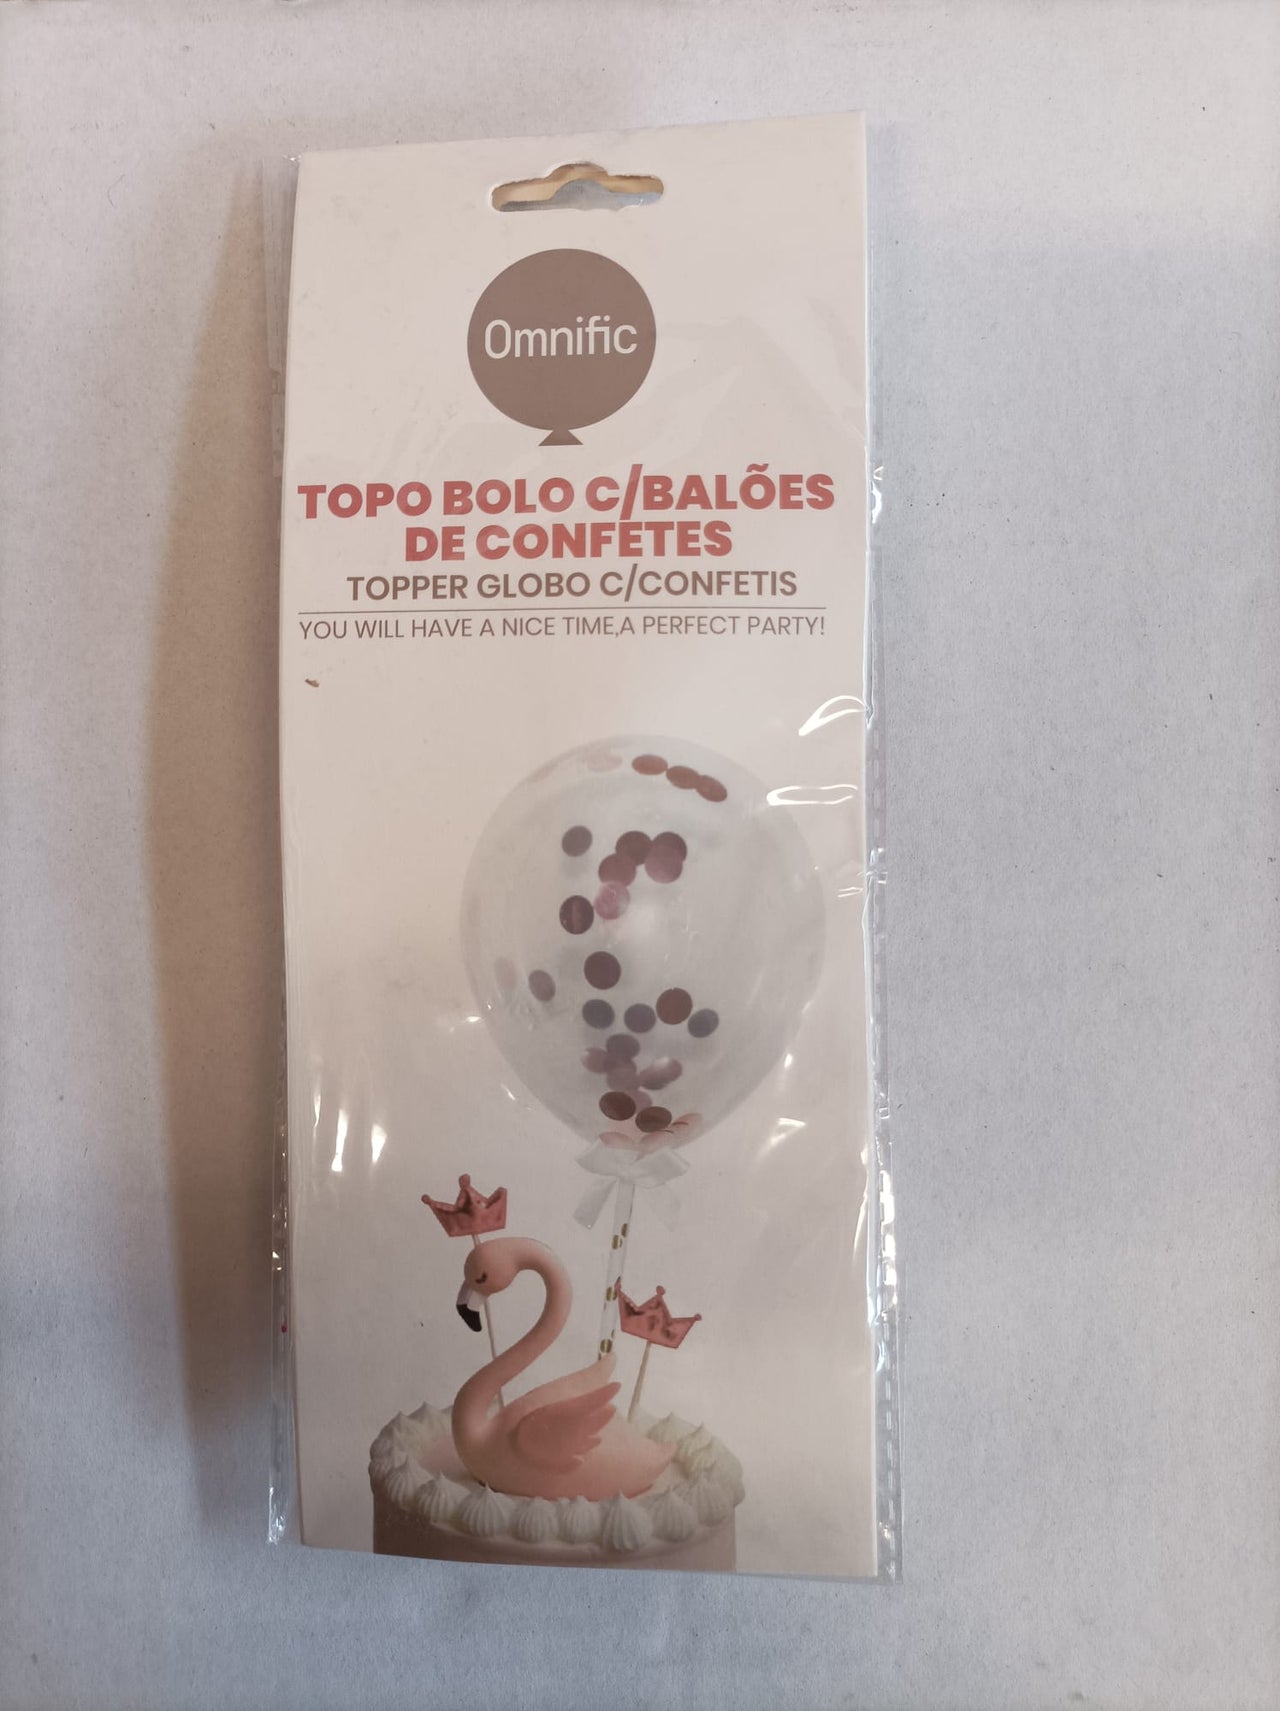 Topo Bolo com Balão de Confetes 2 - 2pcs